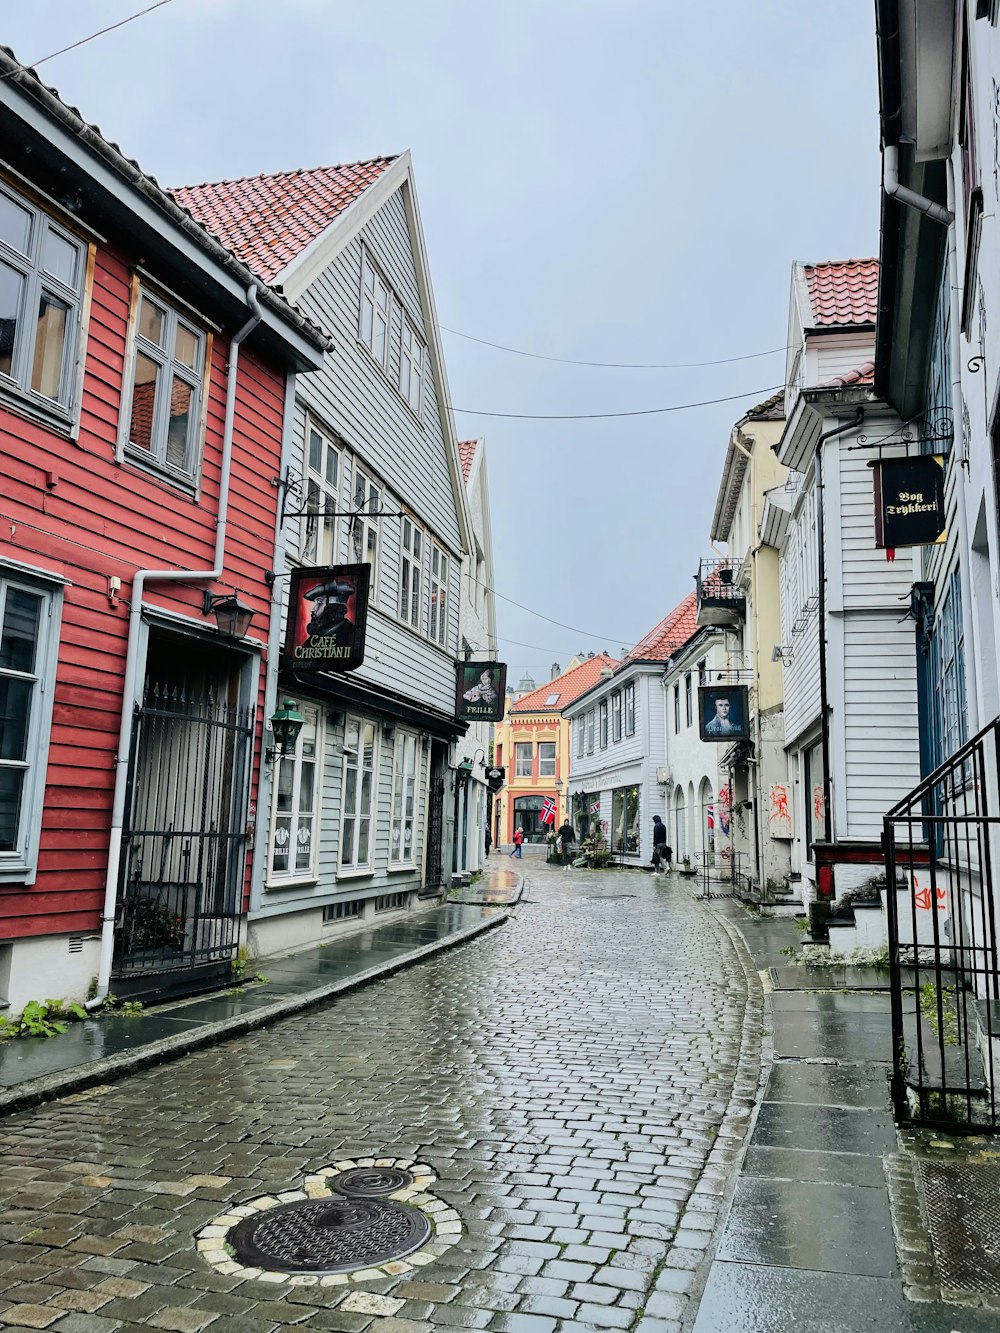 Une rue pavée dans une ville européenne